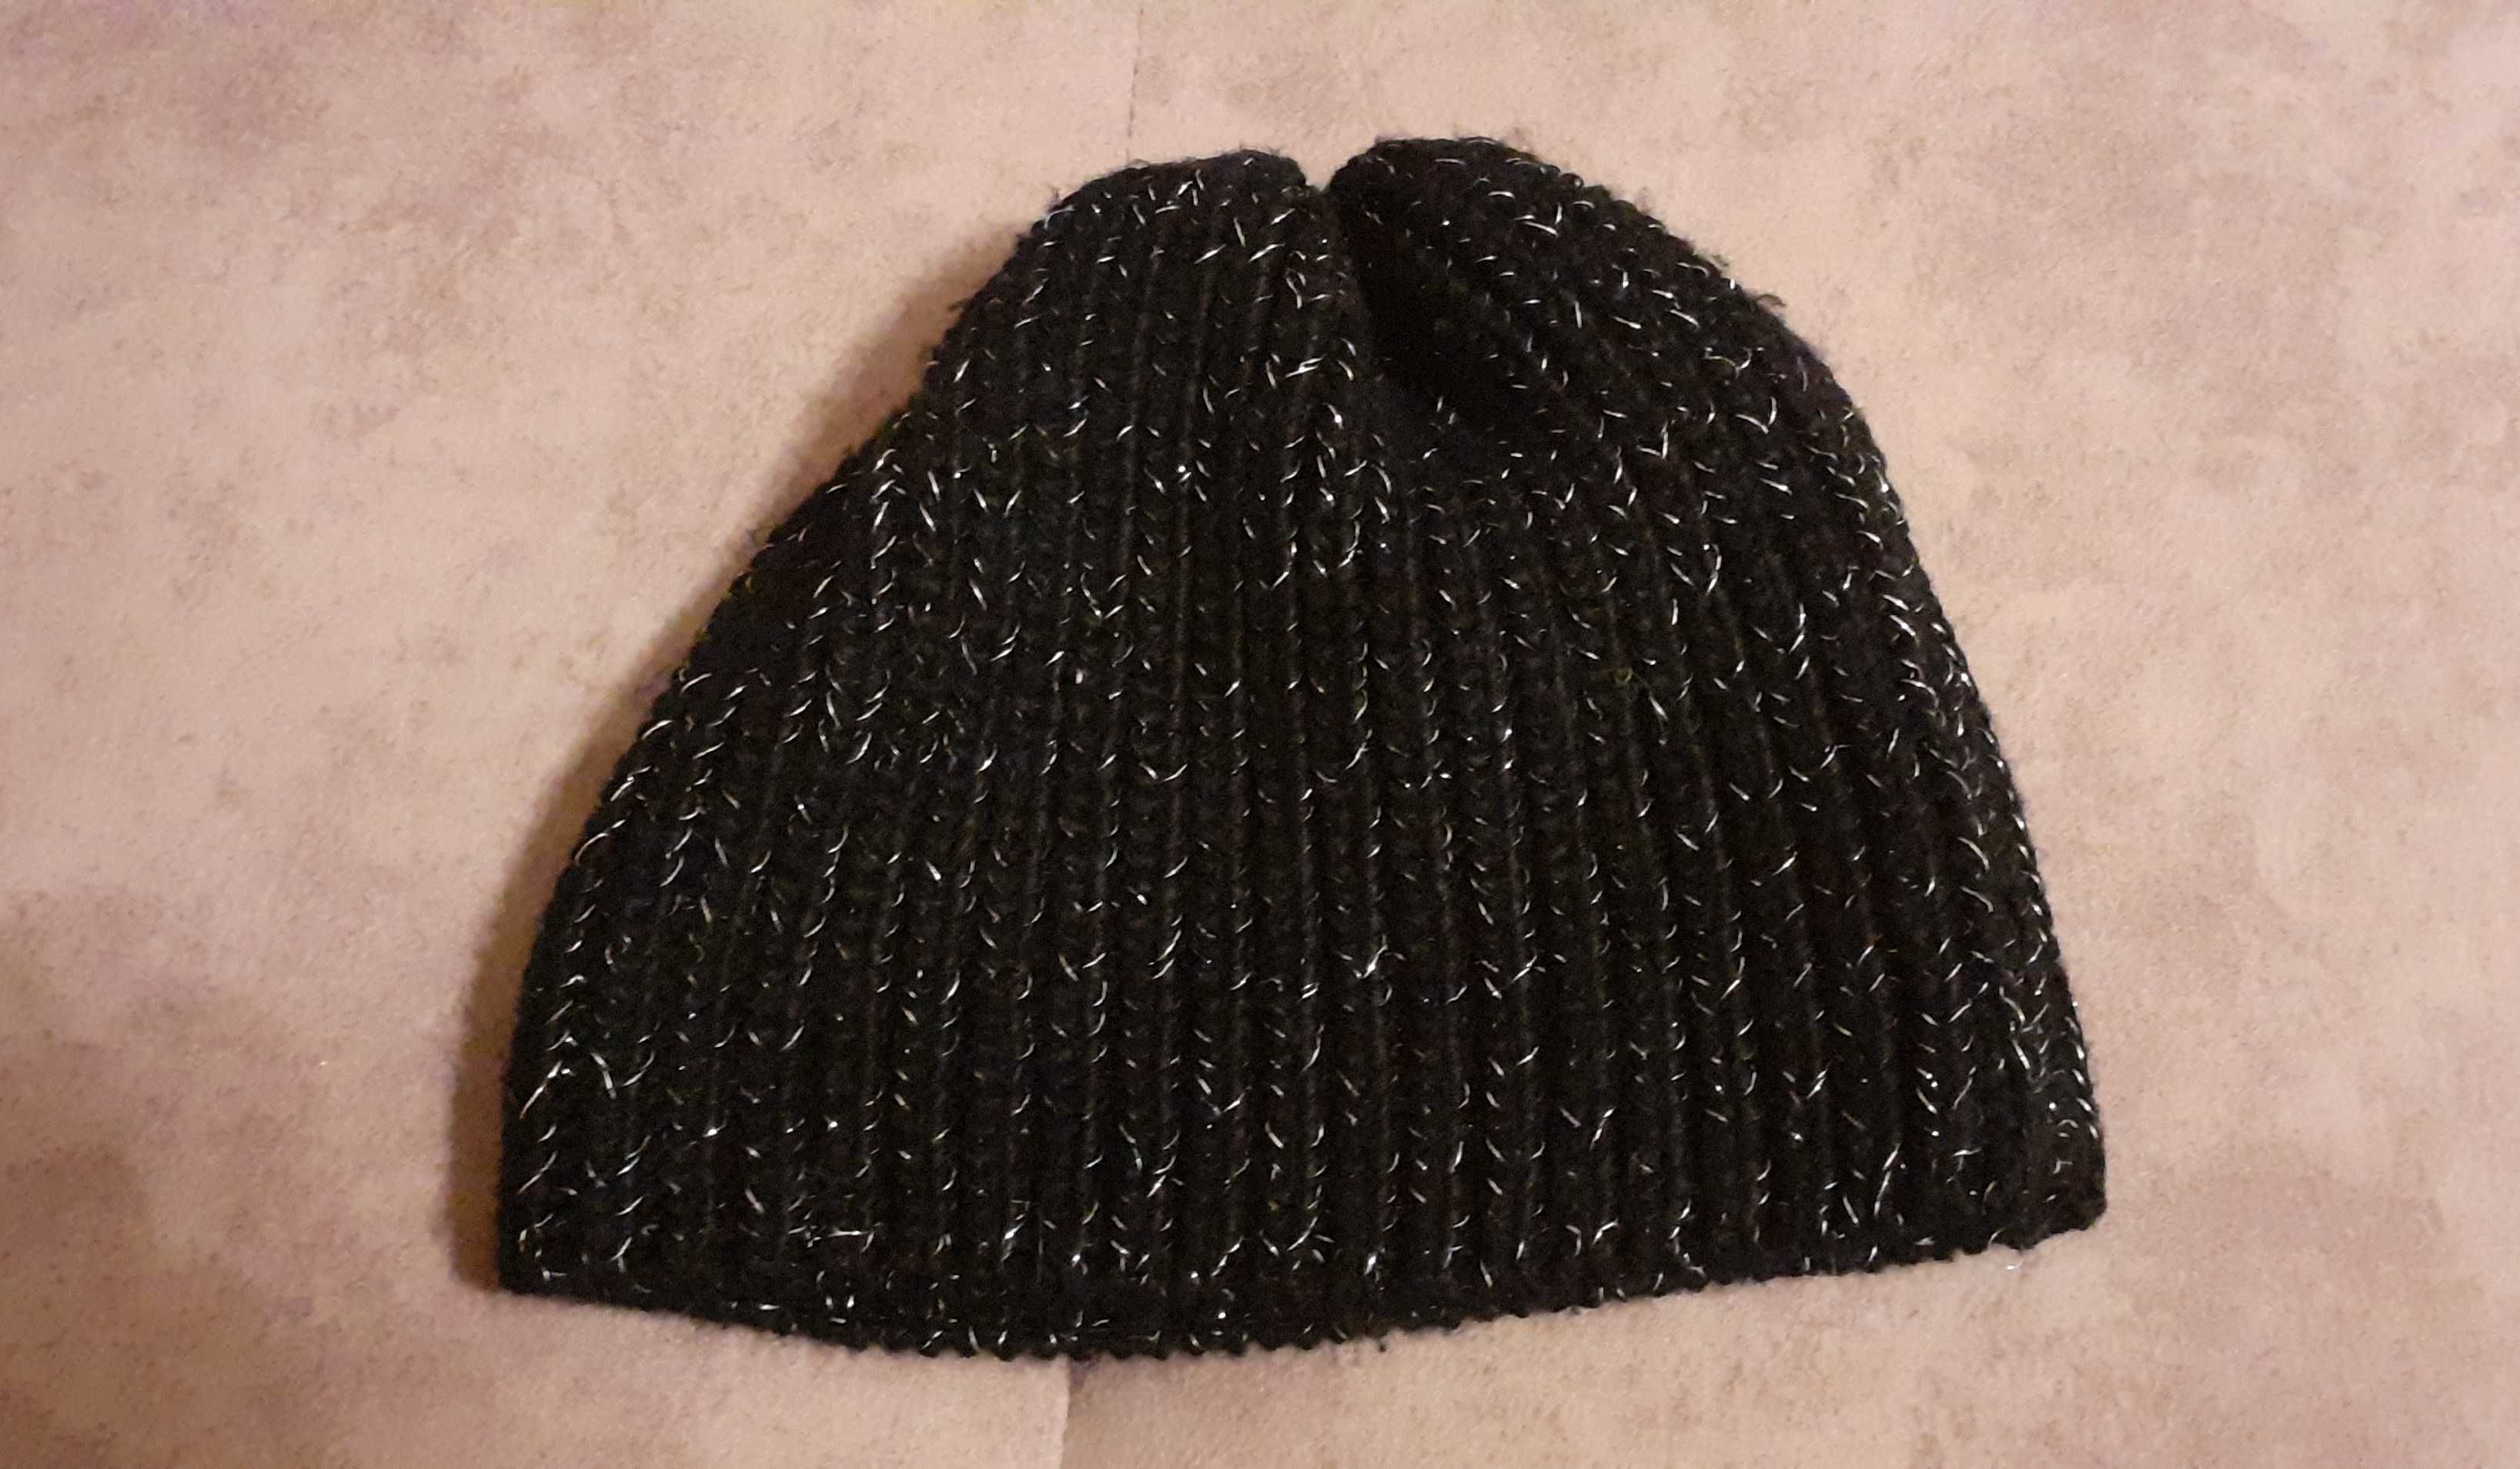 Czarna czapka zimowa